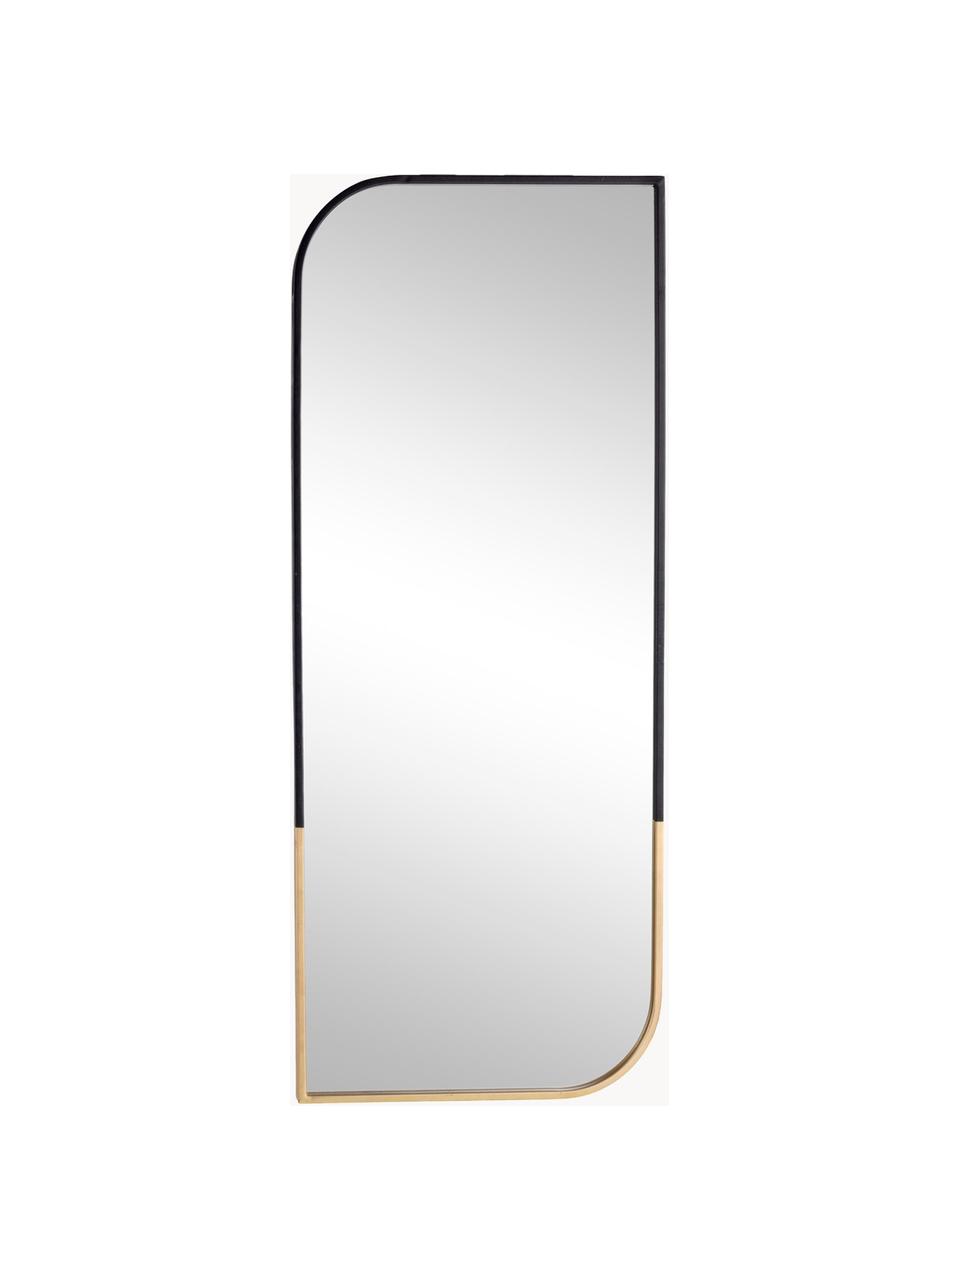 Wandspiegel Reflix mit schwarzem Holzrahmen, Rahmen: Metall, beschichtet, Spiegelfläche: Spiegelglas, Schwarz, Goldfarben, B 41 x H 100 cm